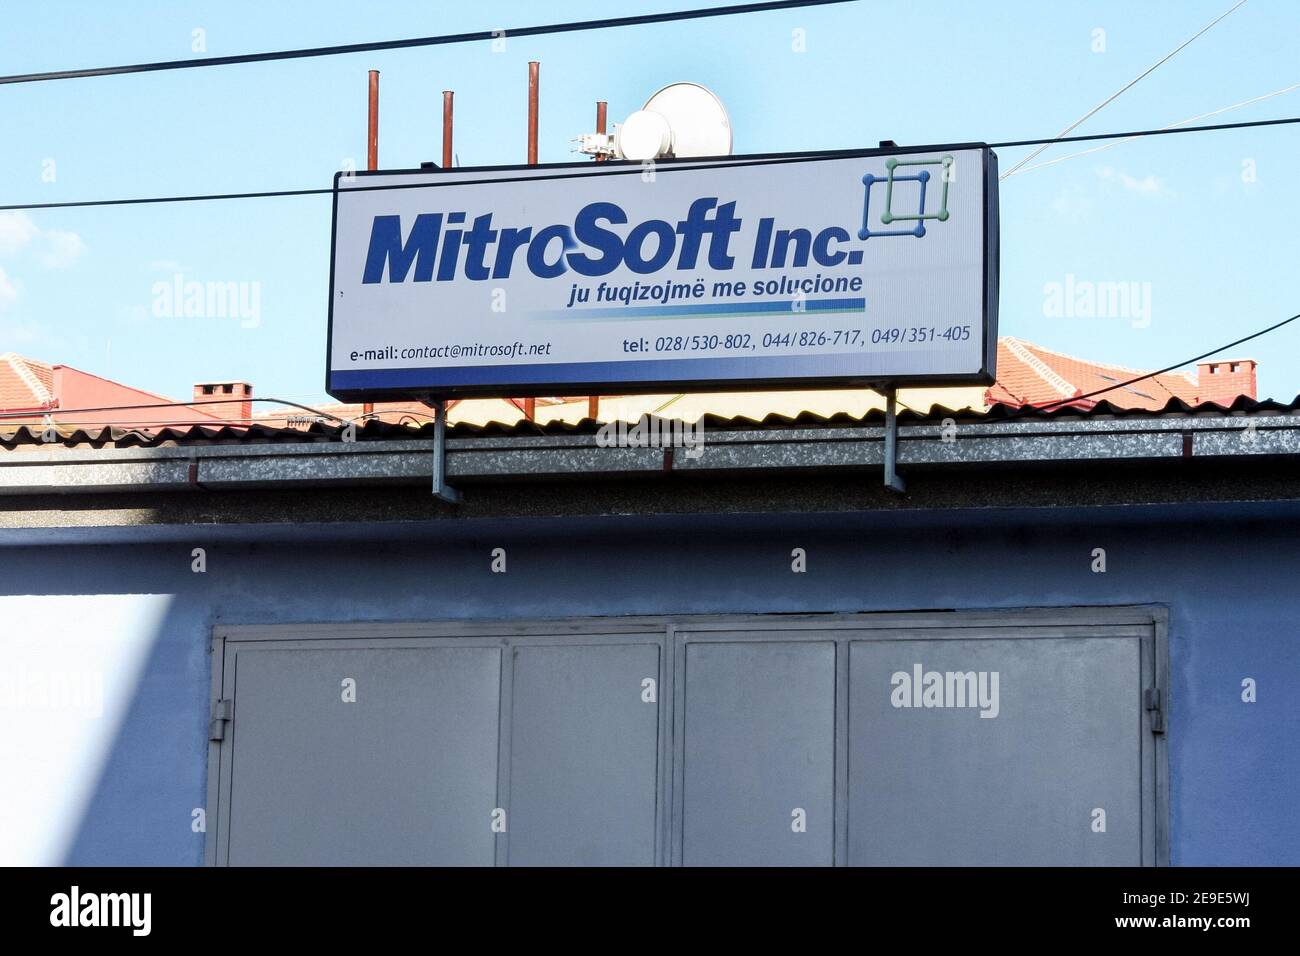 MITROVICA, KOSOVO - 21. SEPTEMBER 2009: Mitrosoft Zeichen, ein IT-Computing und Daten-Startup imitieren das Logo der Microsoft-Corporation, vor tei Stockfoto